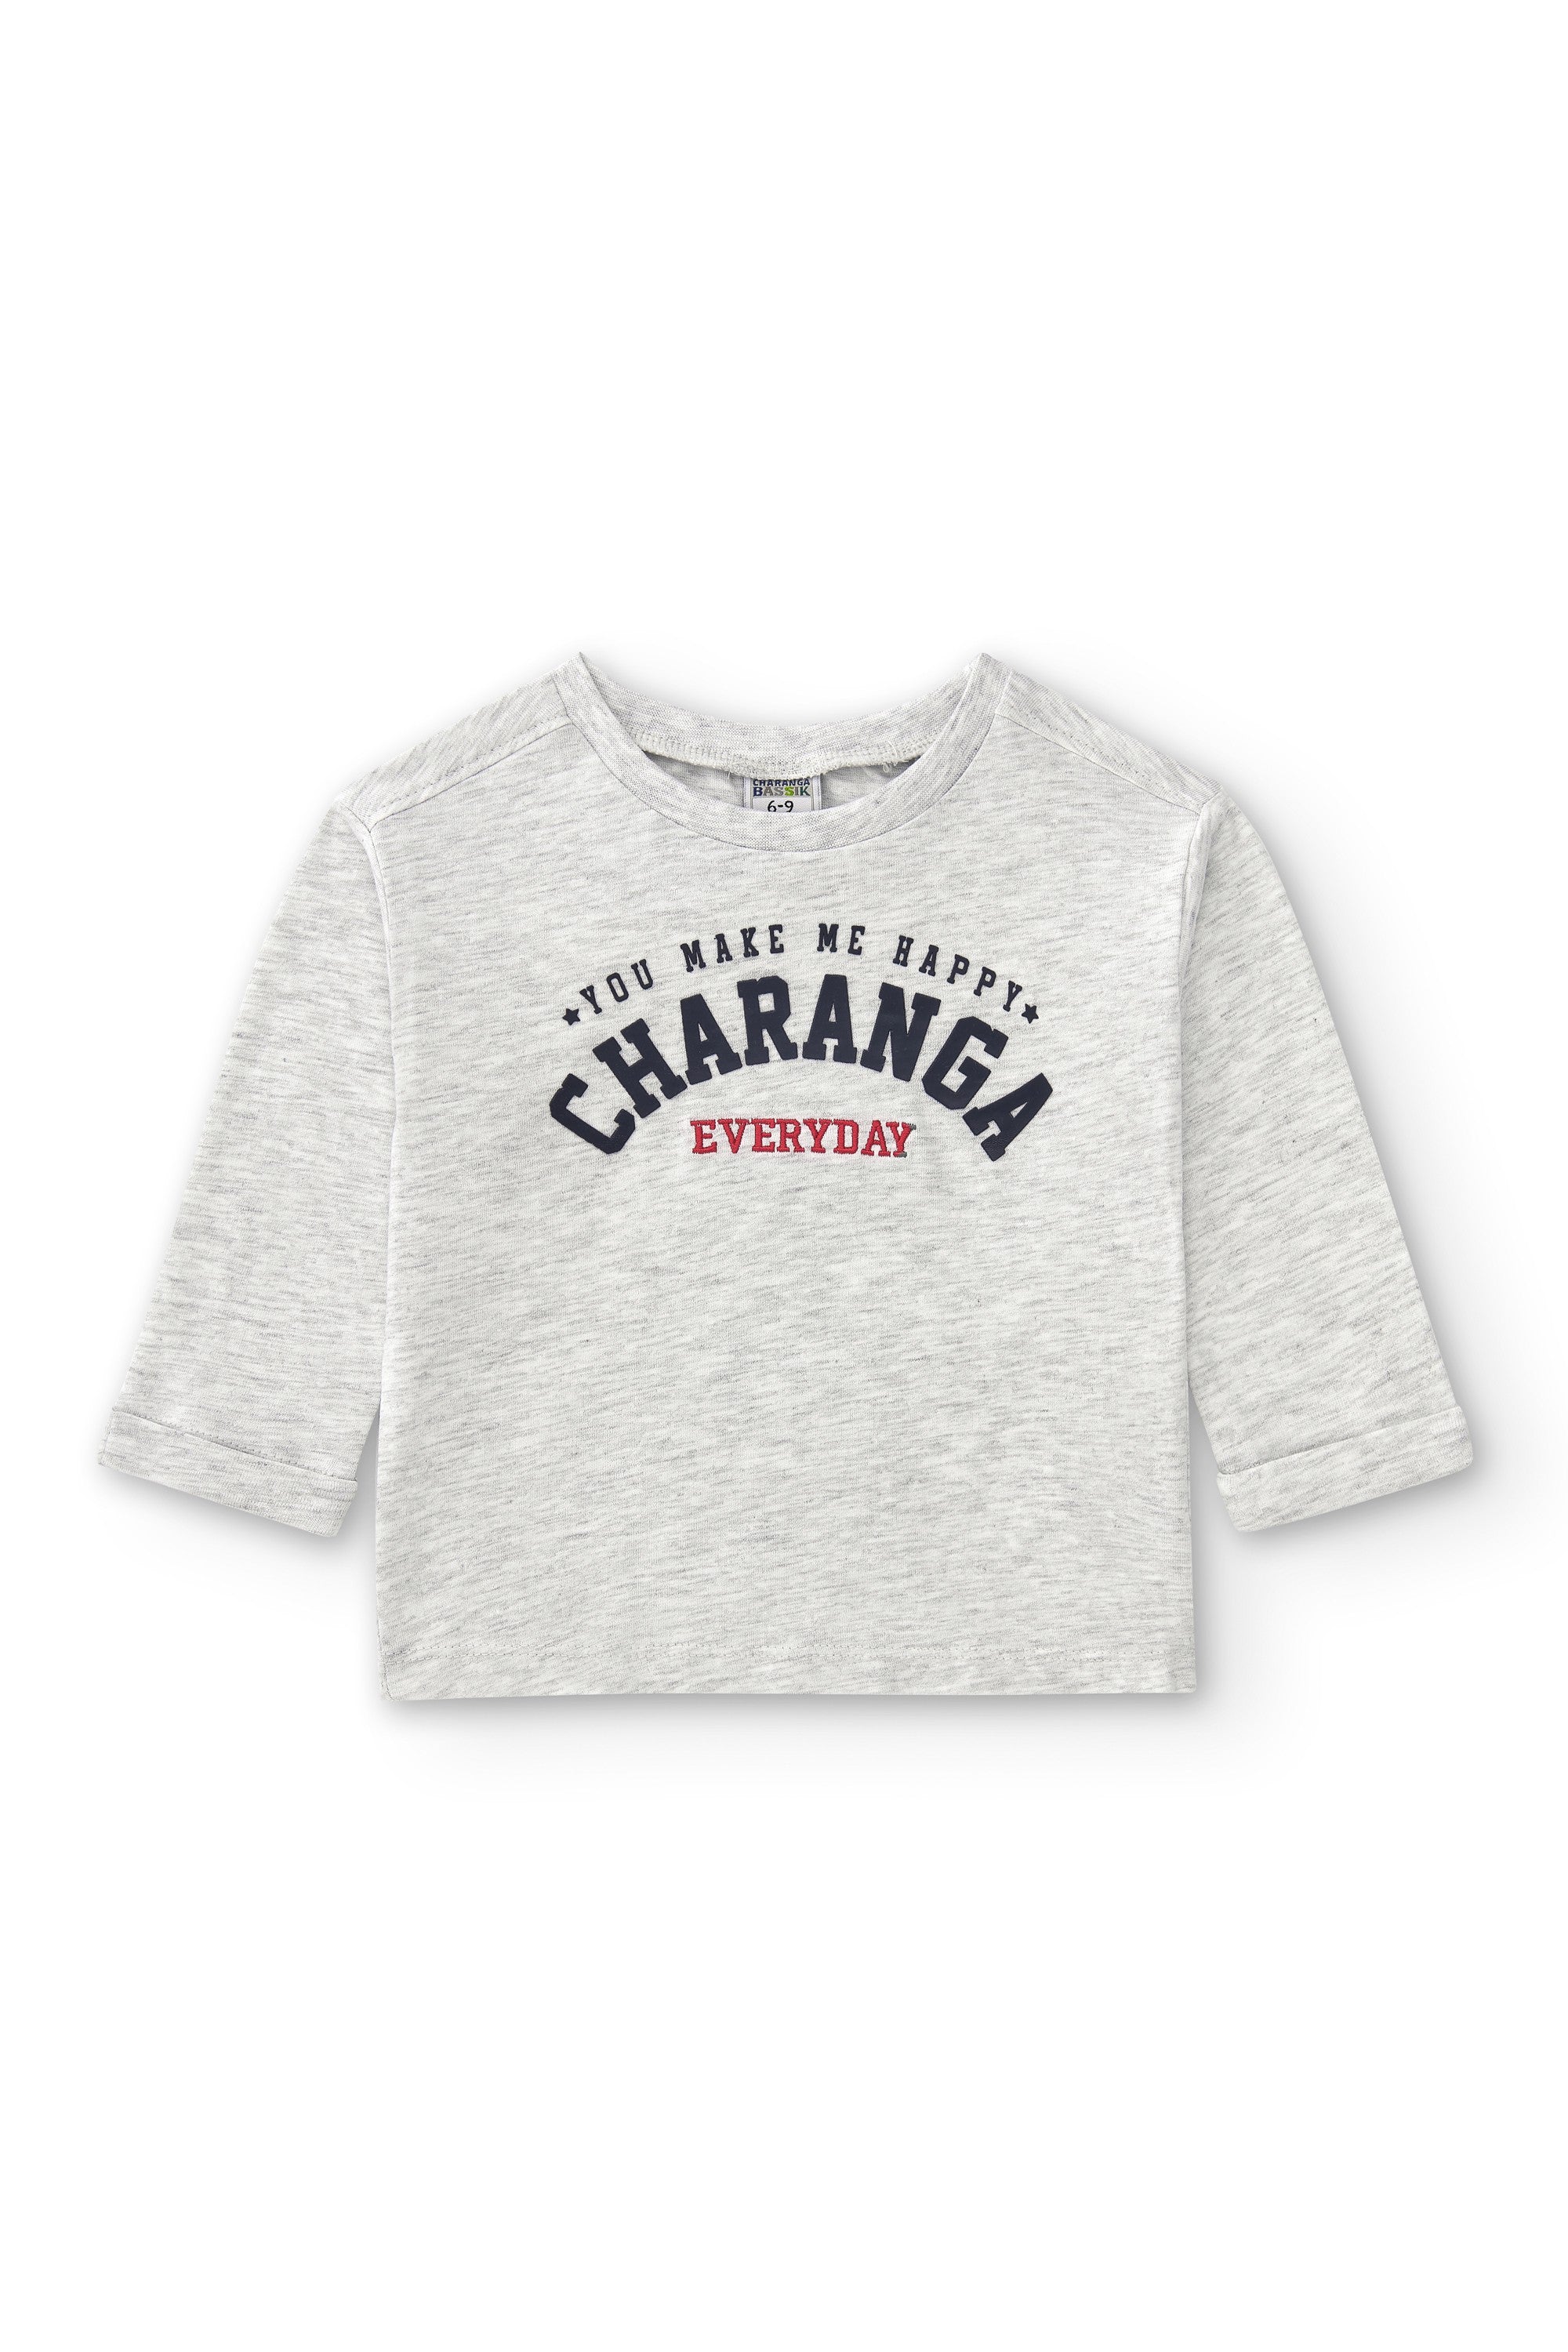 Camiseta de bebé gris VERANO/Charanga